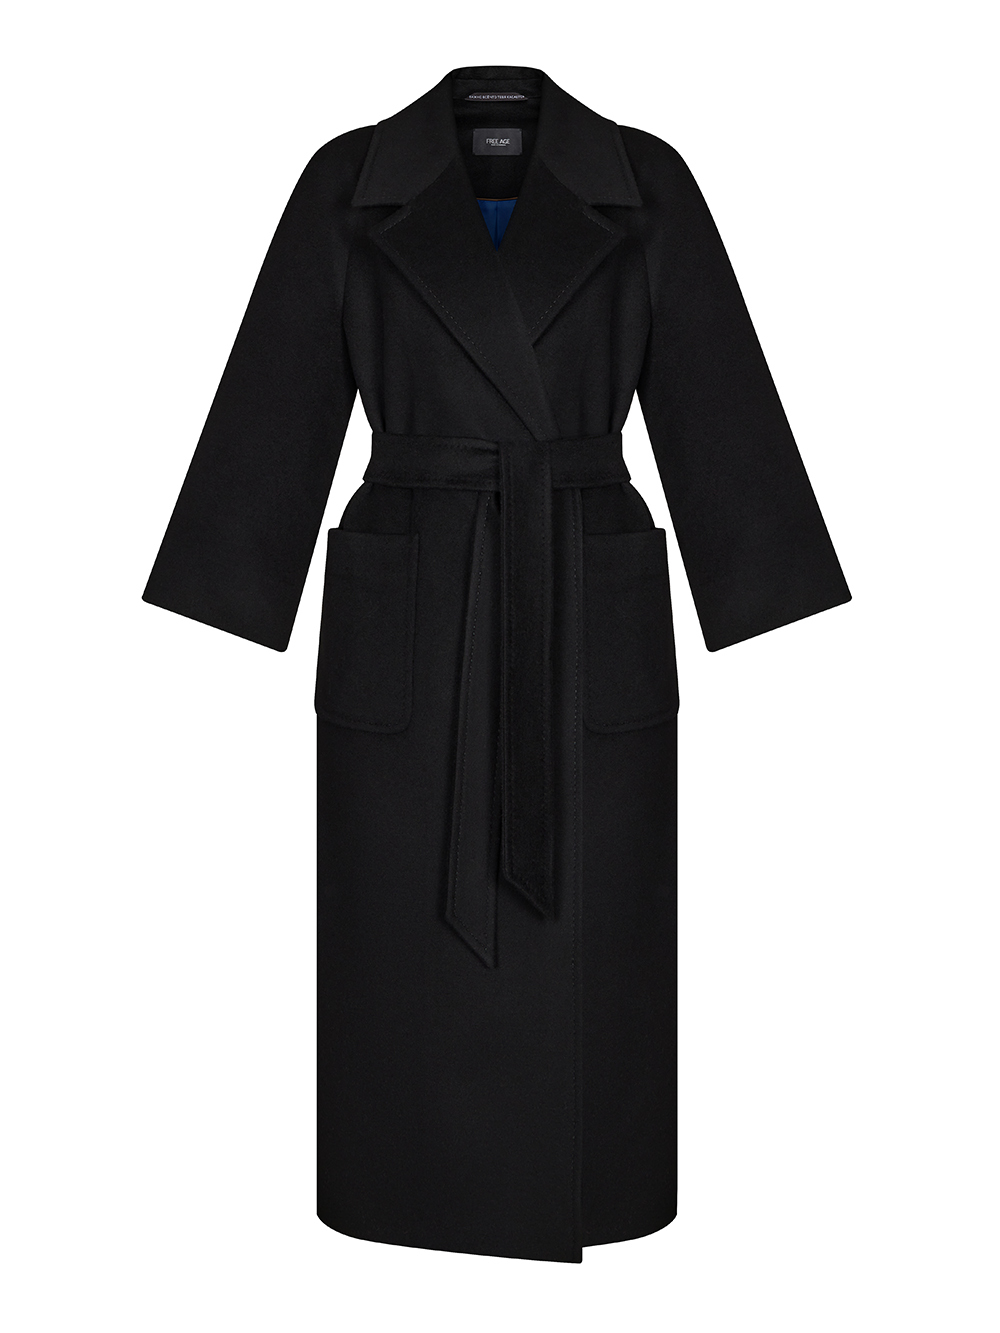 Женское пальто черного цвета из шерсти и кашемира - фото 1